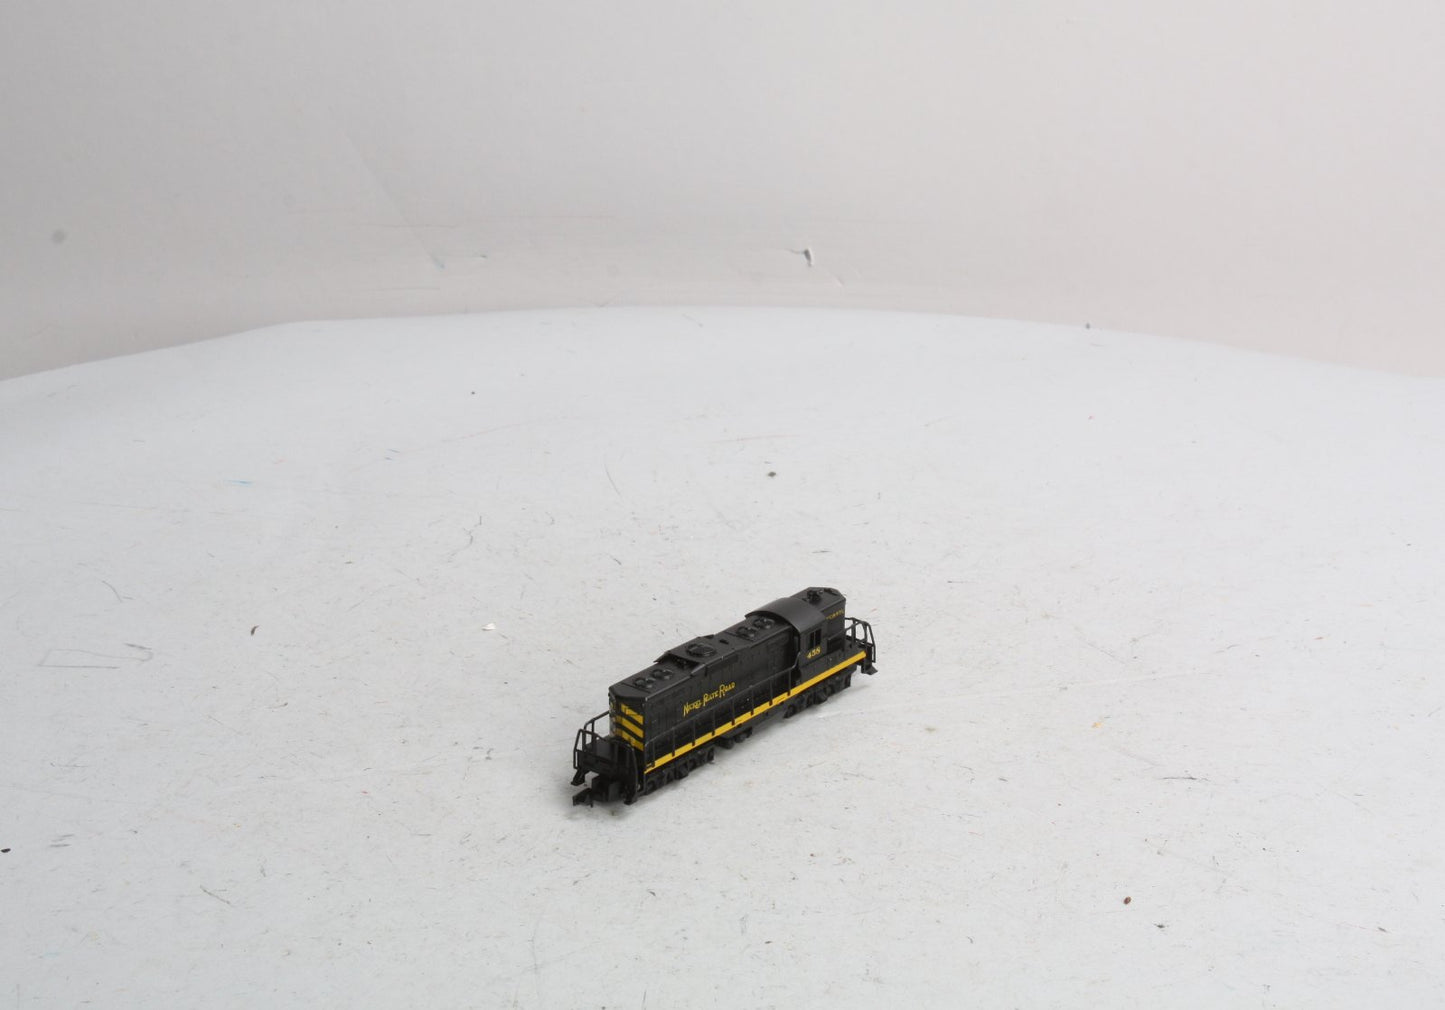 Arnold 5048 N Scale Nickel Plate Road GP9 Diesel Locomotive #458 LN/Box